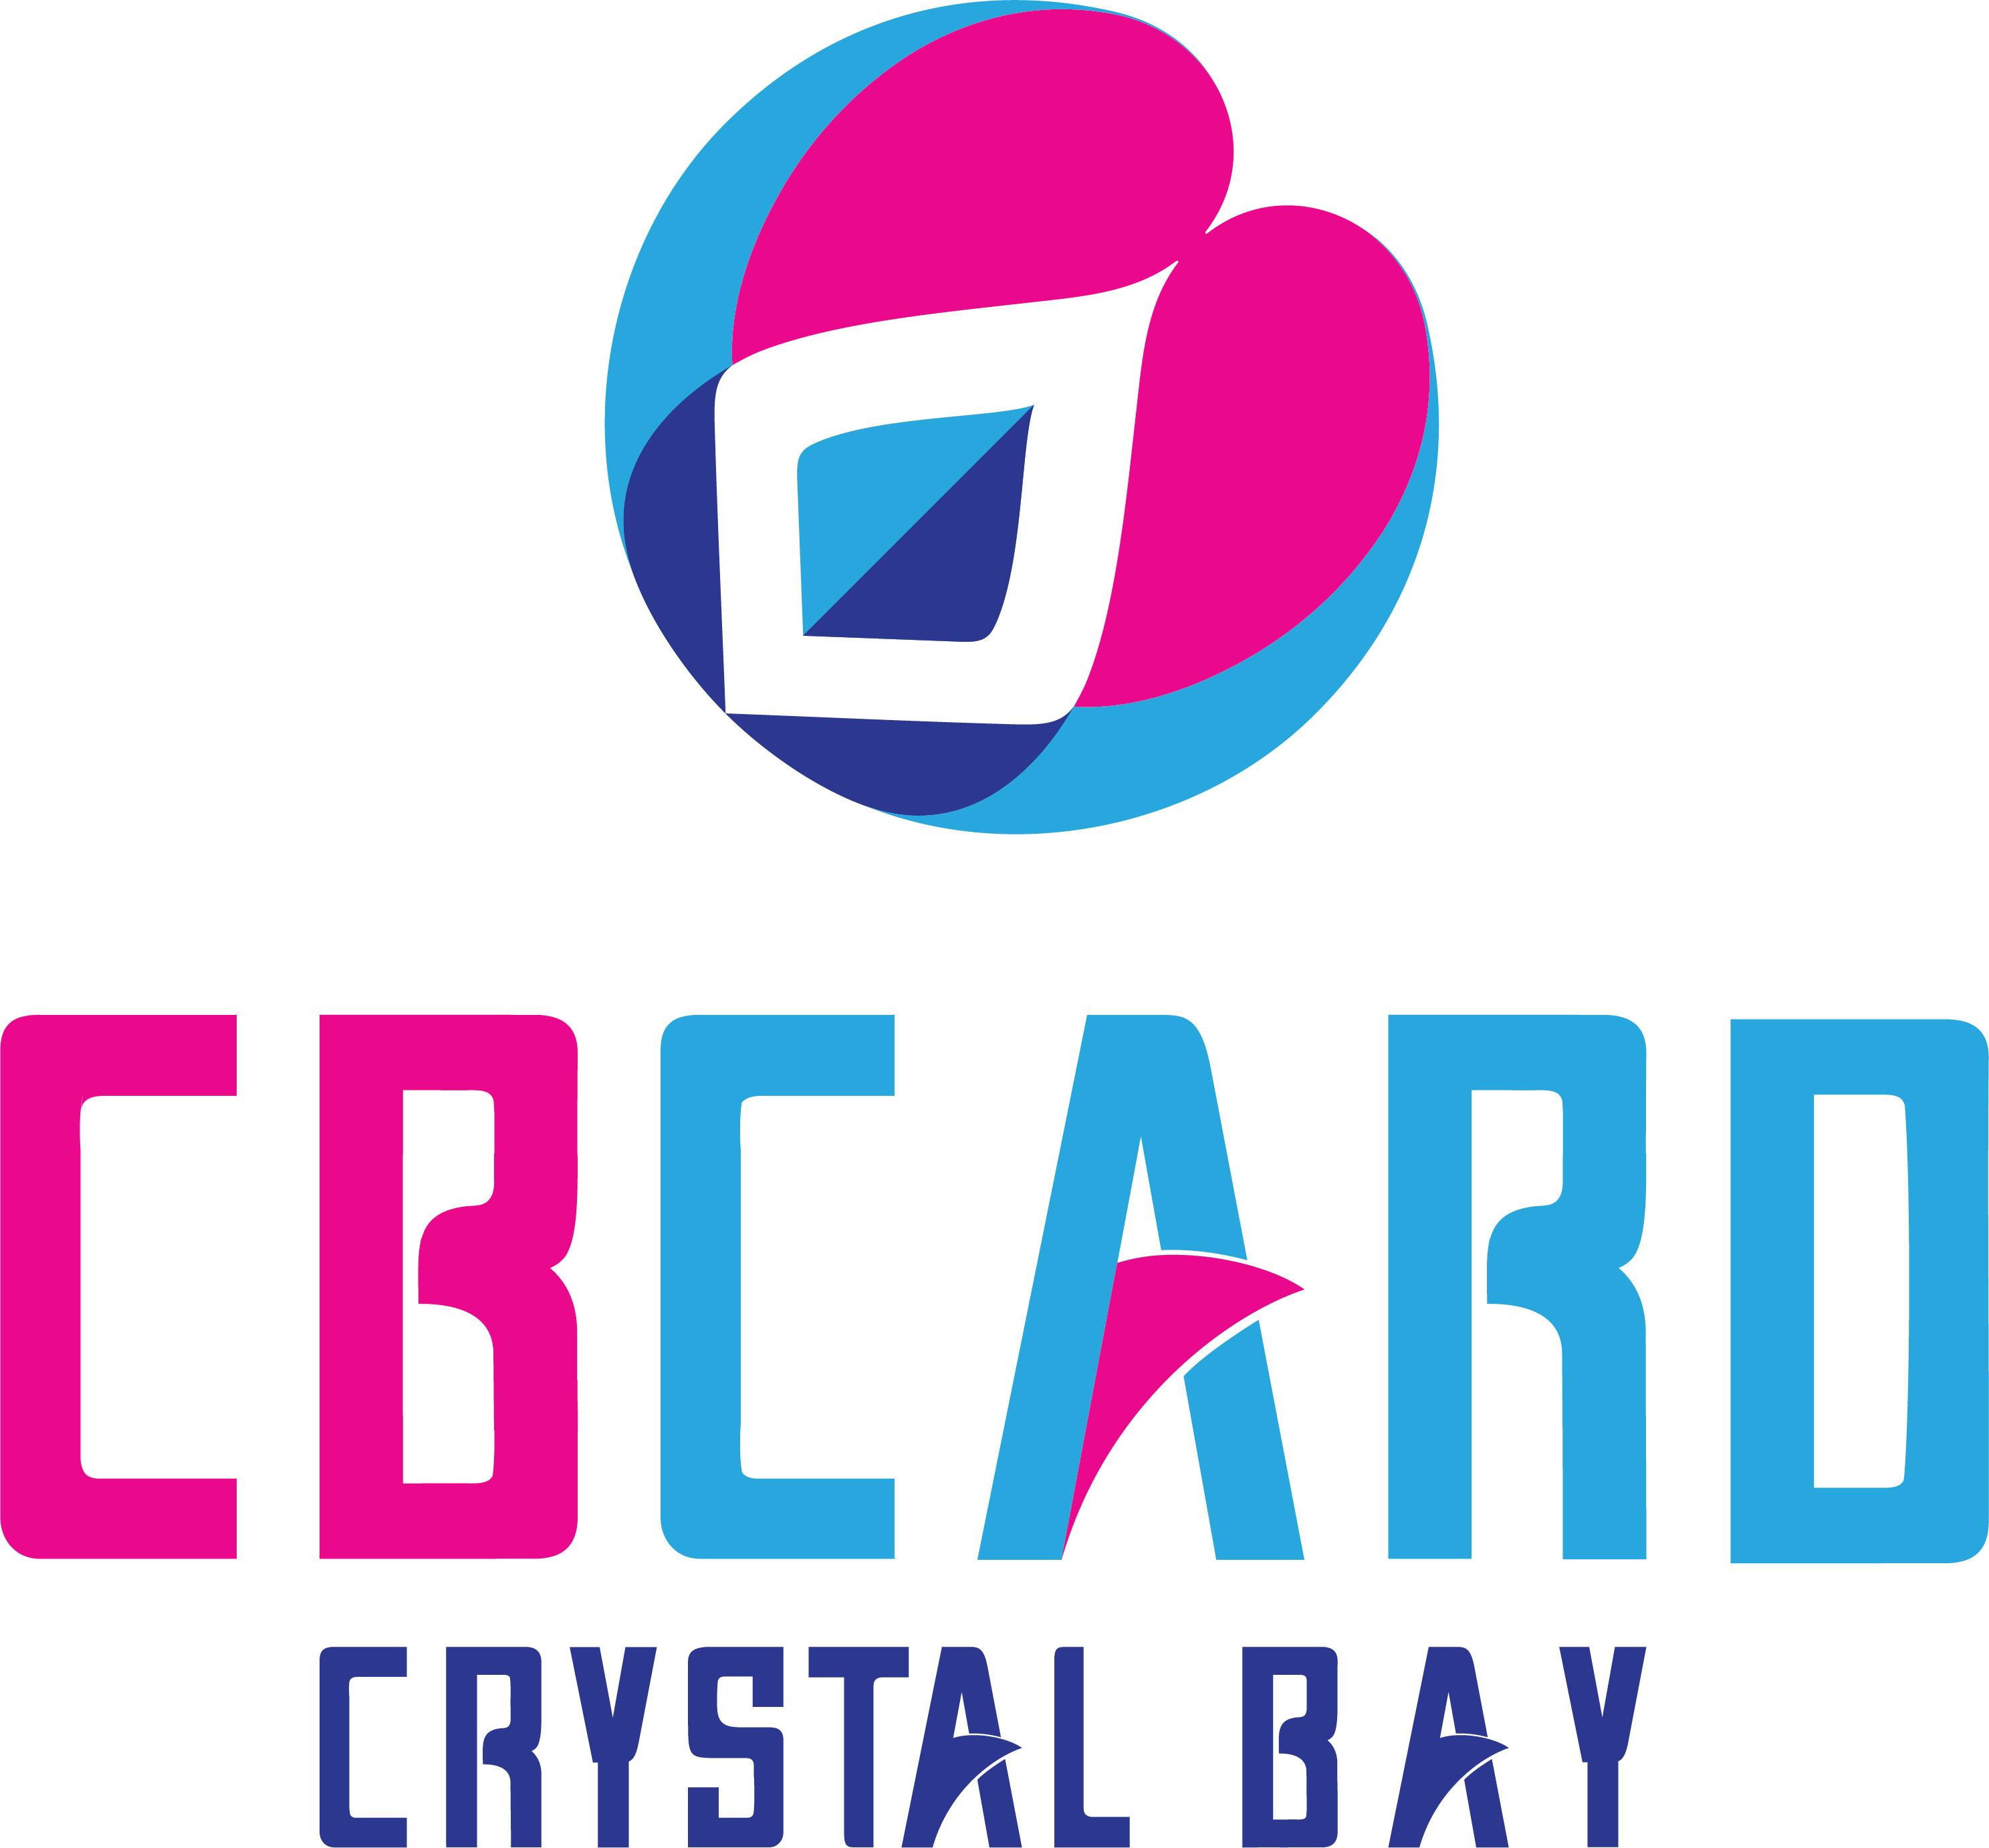 Công ty Cổ Phần Thẻ Du lịch Crystal Bay